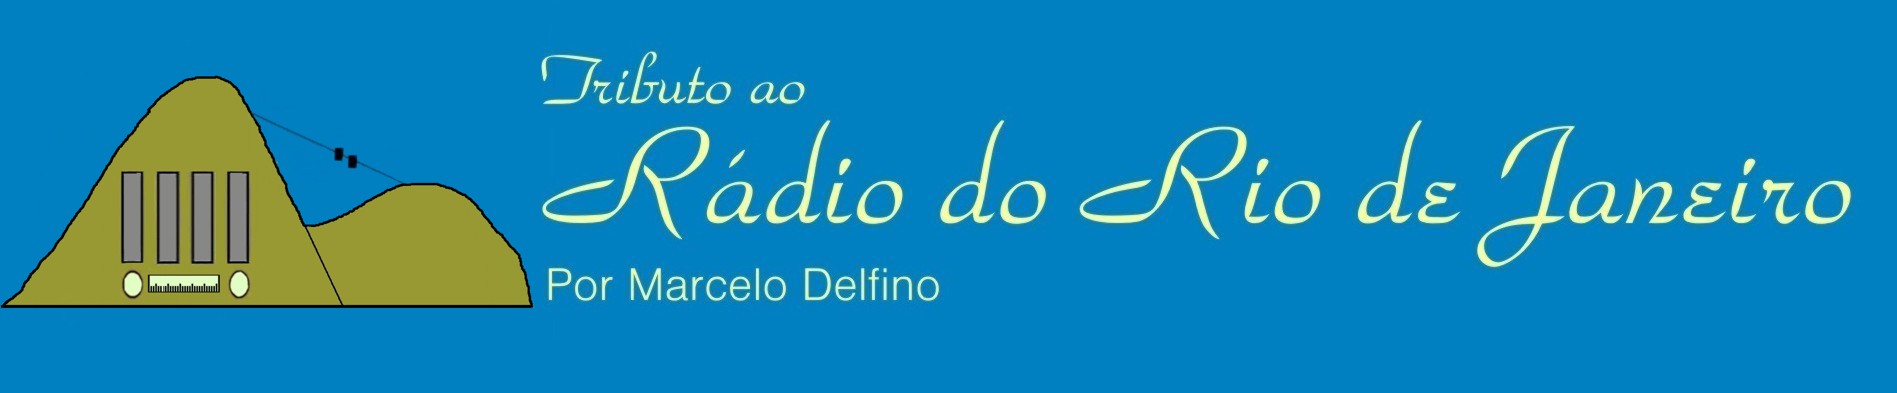 Tributo ao Rádio do Rio de Janeiro